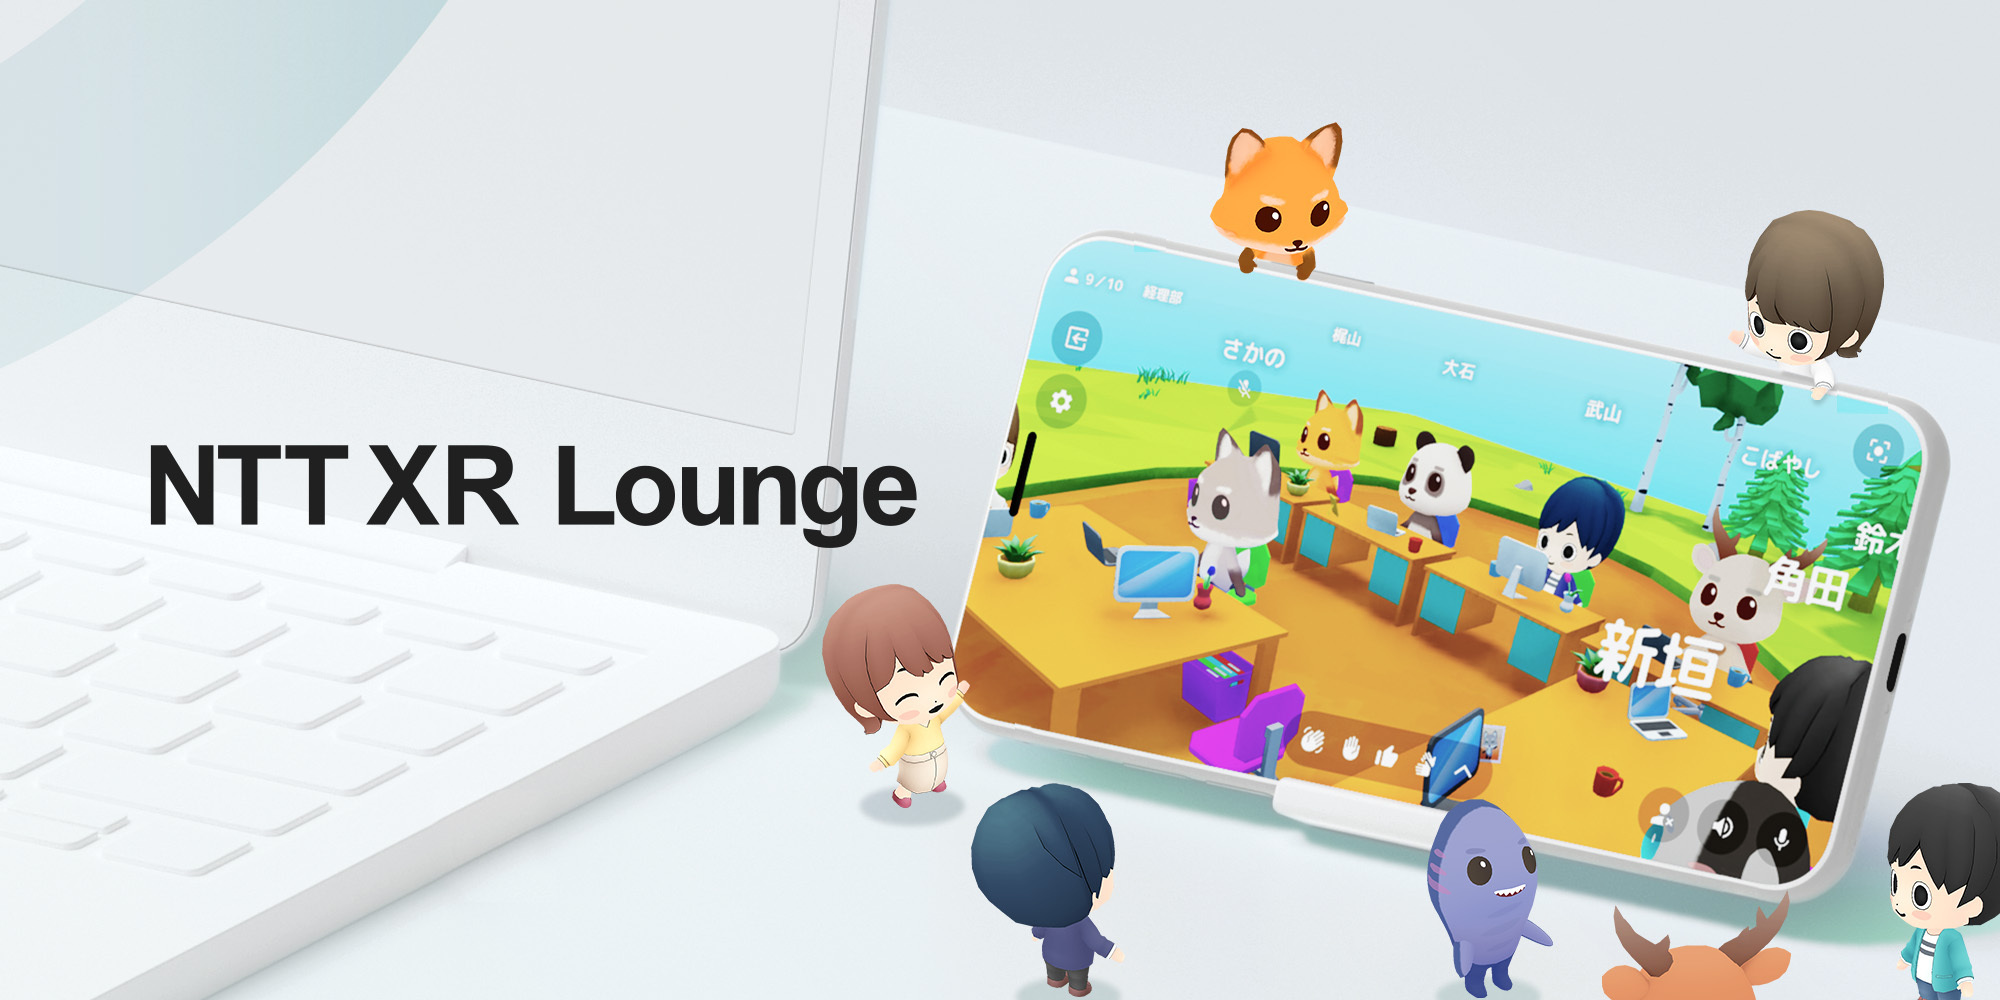 NTT XR Lounge